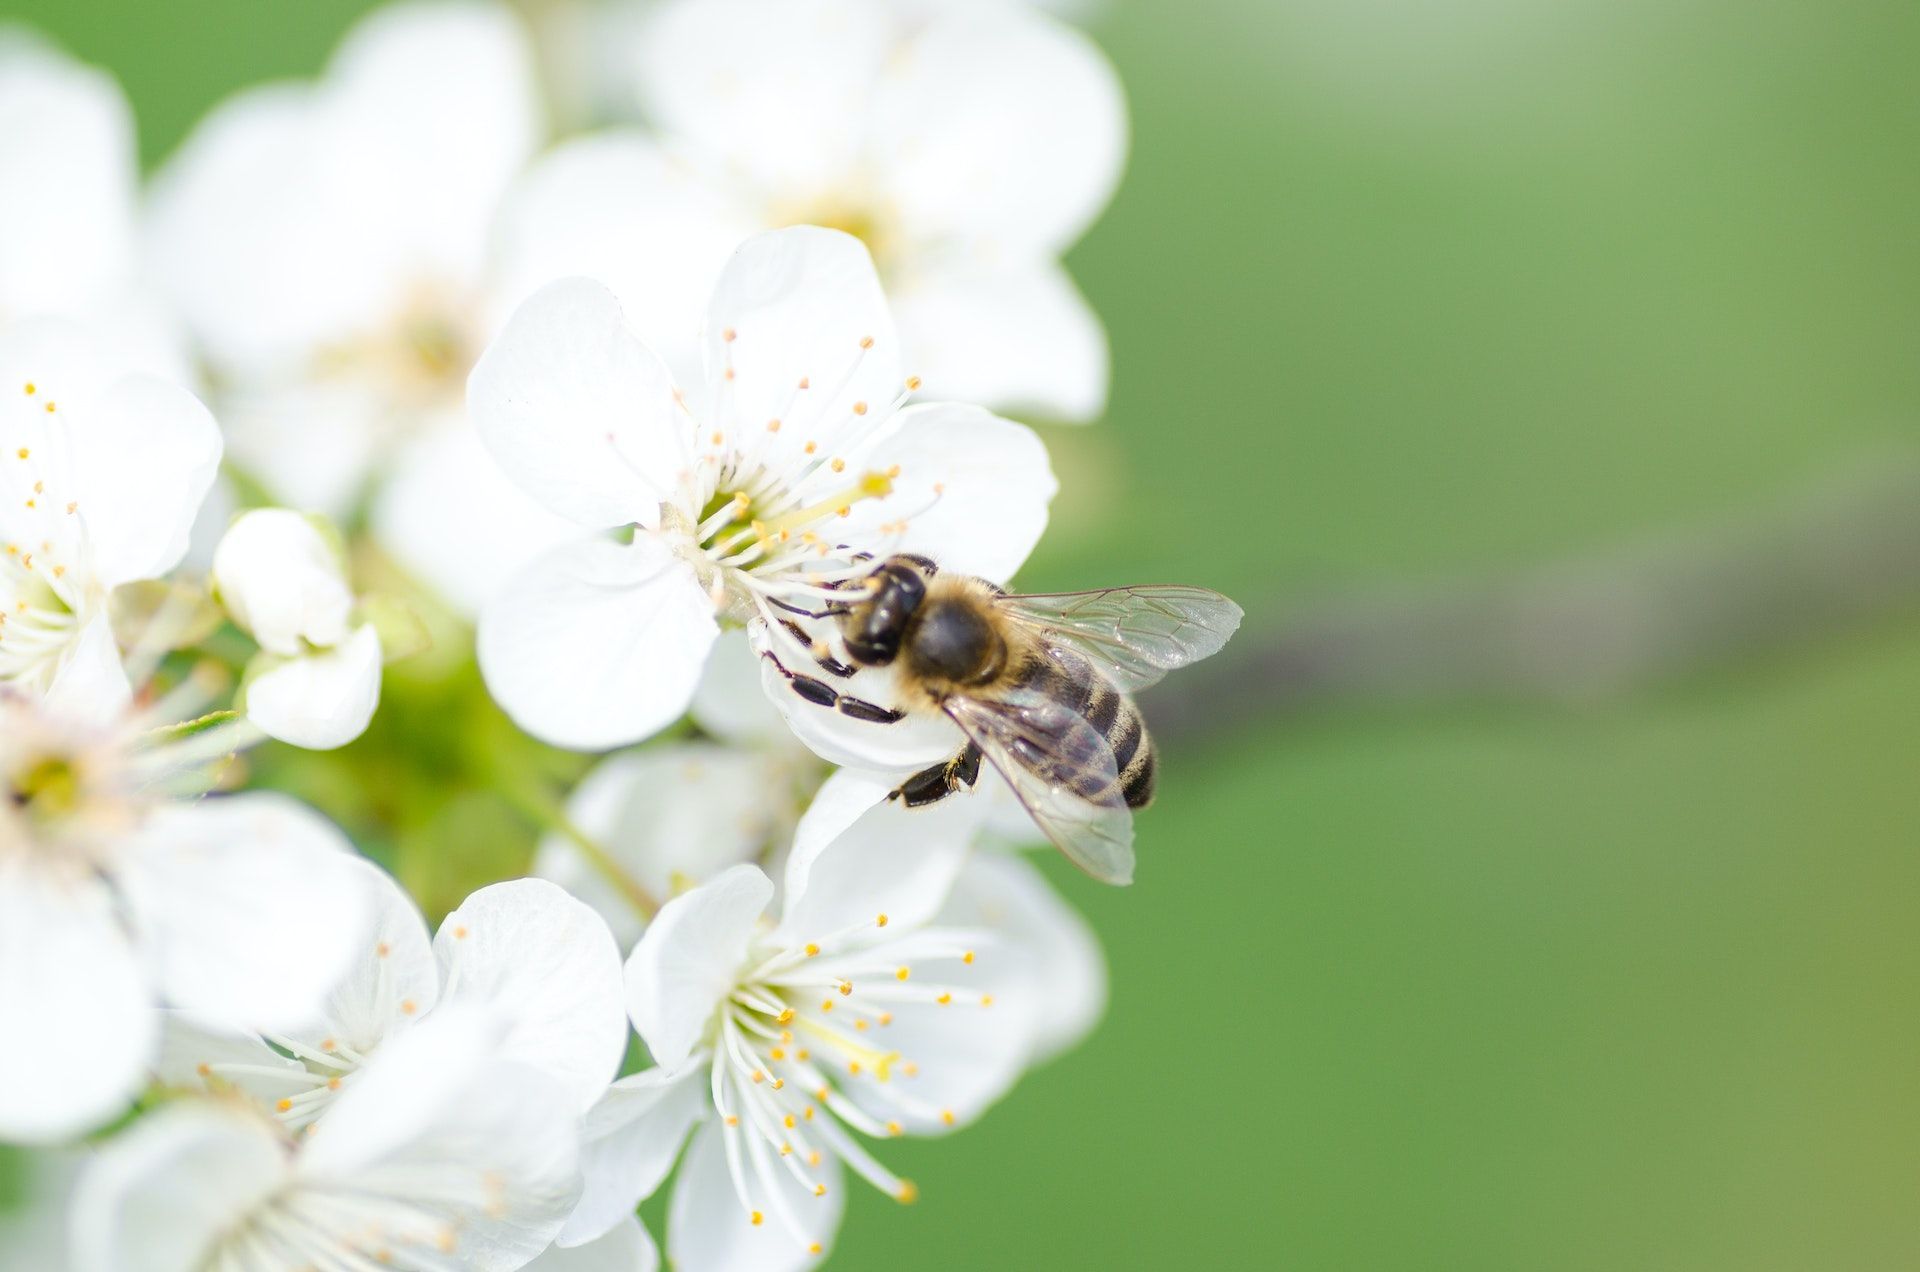 30 квітня на вишню сідають бджоли, значить добре вродять плодові дерева / © Pexels